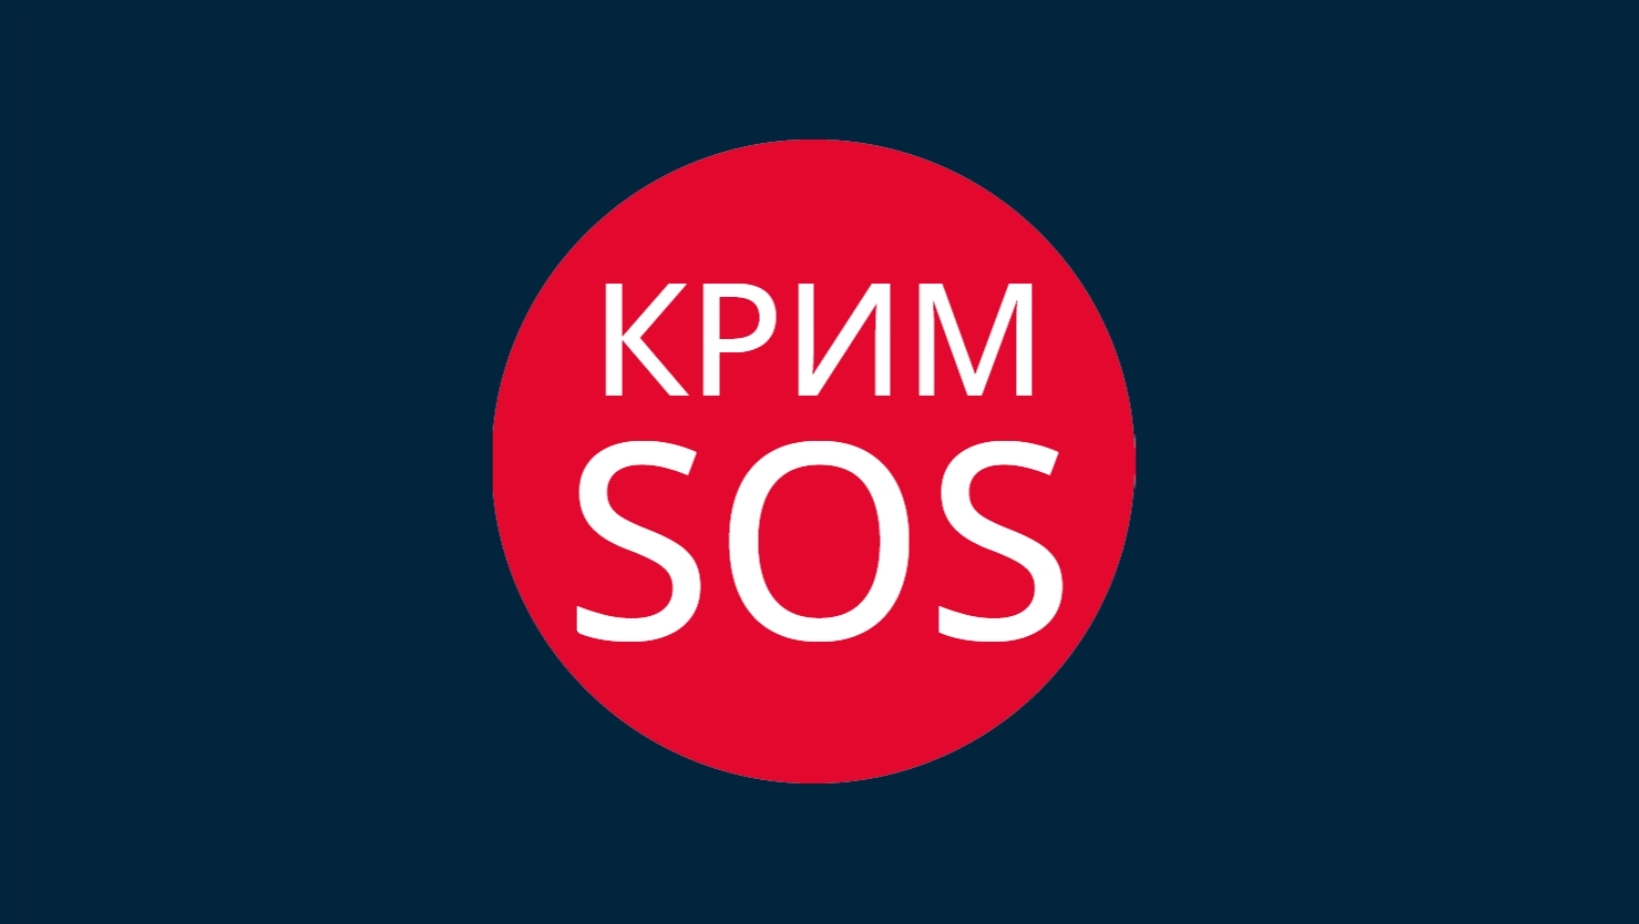 Російська генпрокуратура внесла громадську ініціативу «КримSOS» до реєстру «небажаних» через загрозу нацбезпеці РФ